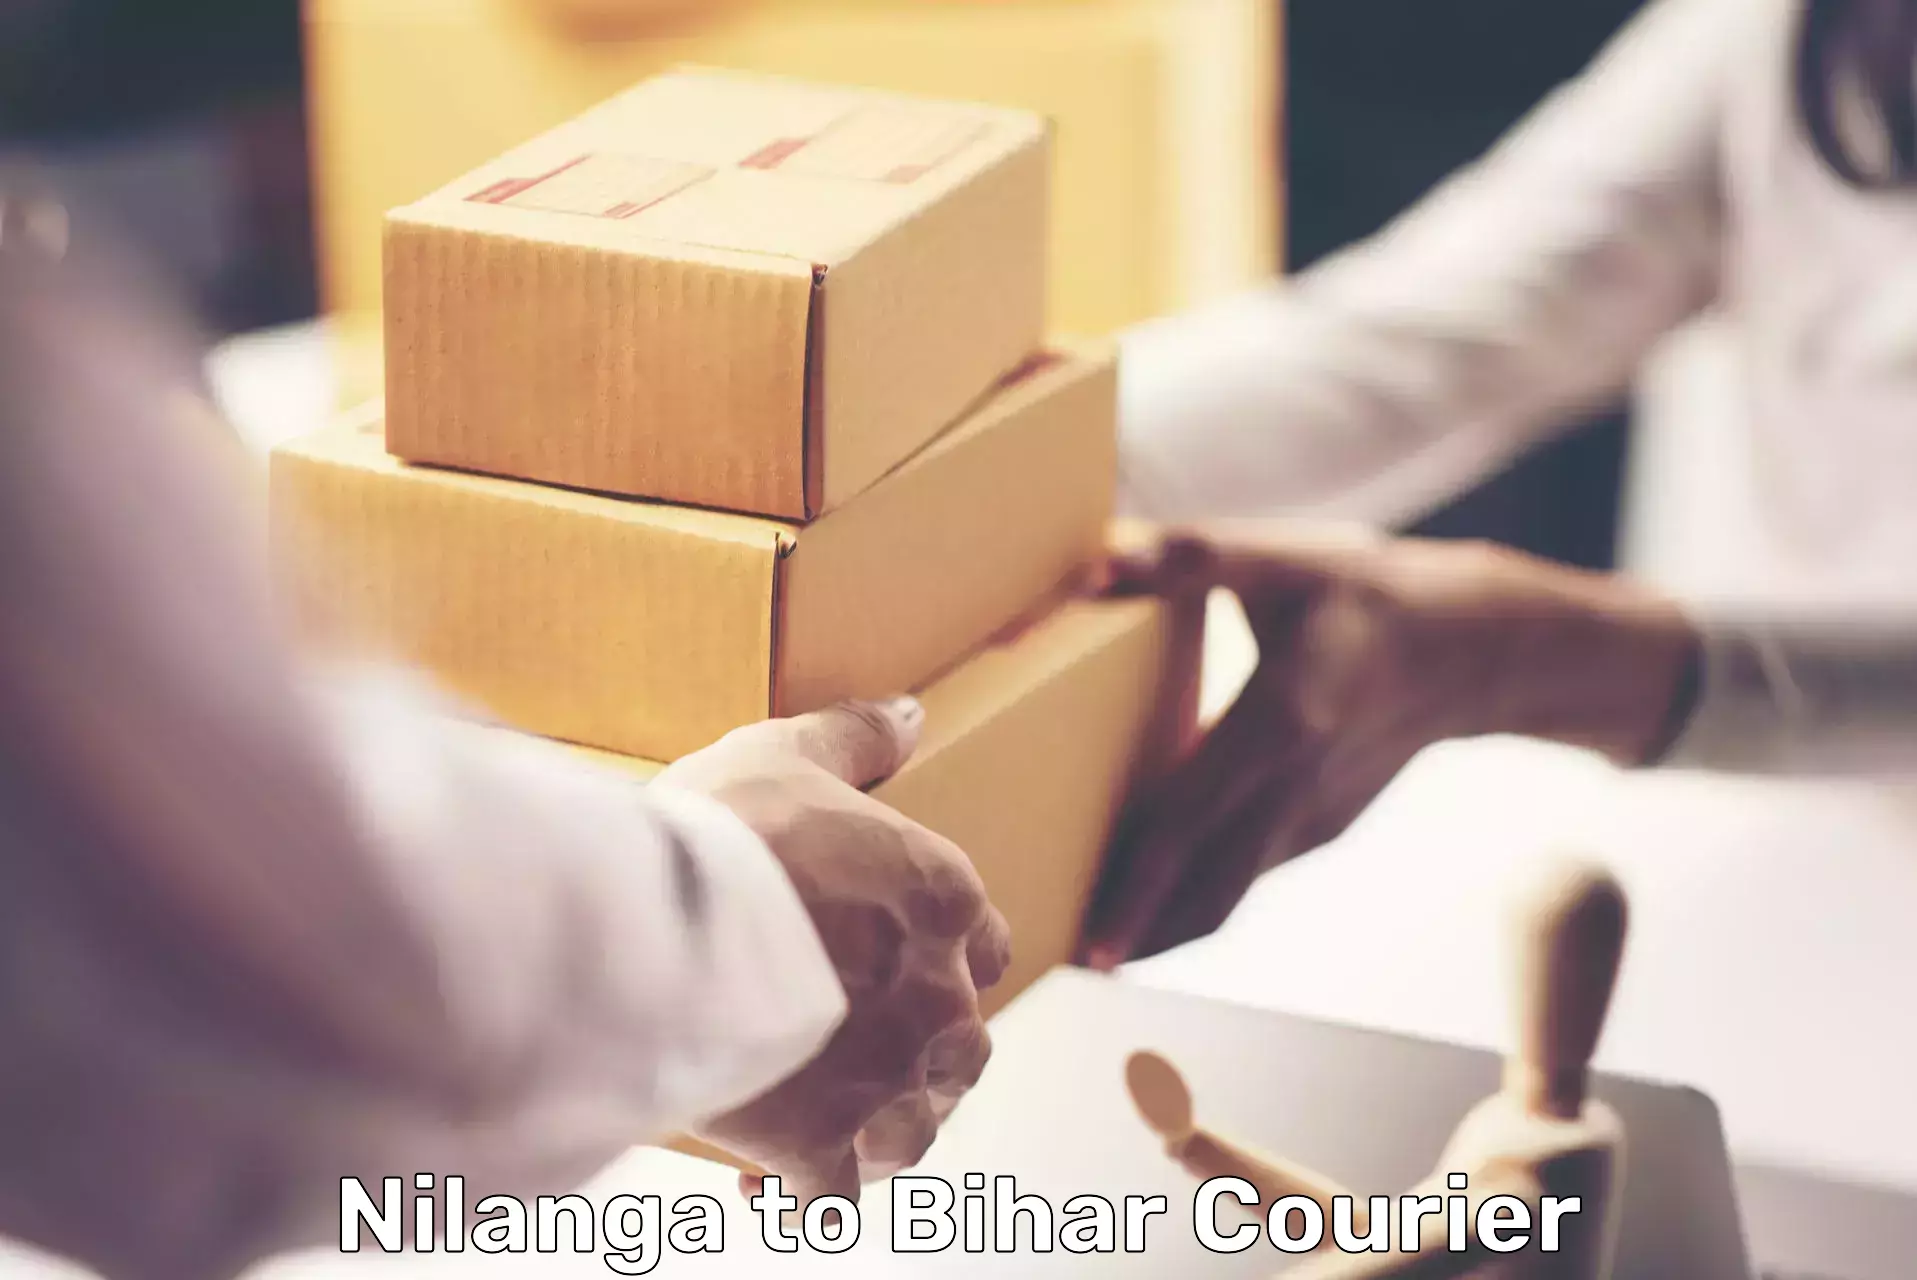 High-speed parcel service Nilanga to Bharwara